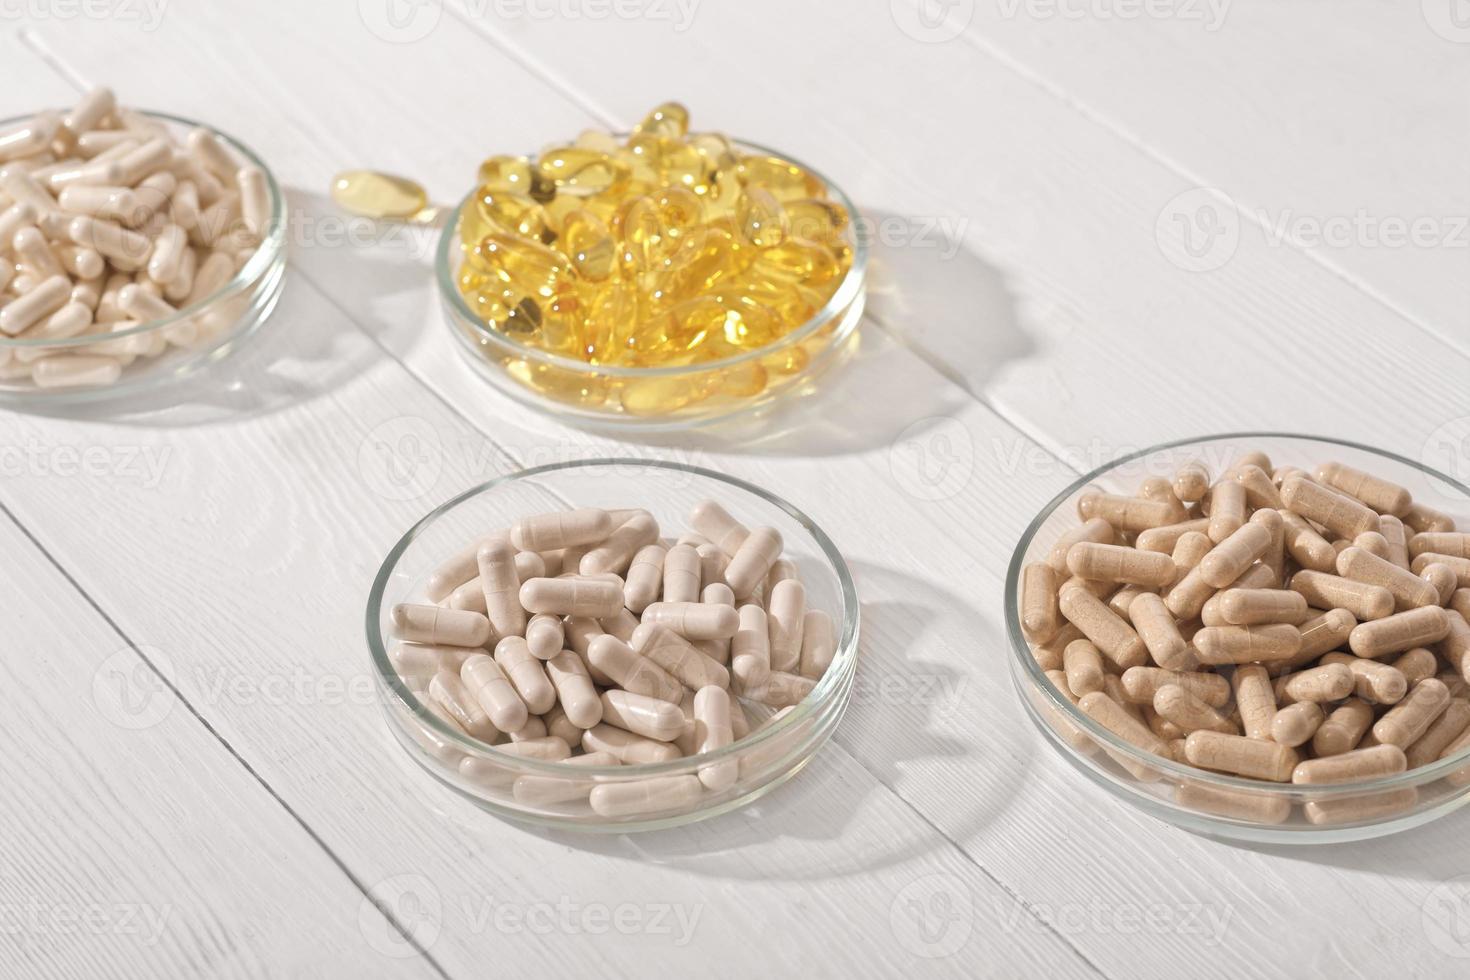 voedsel supplement in capsules in Petri gerechten Aan wit houten tafel. omega 3 en divers vitamines pillen voor hart en vasculair systeem steun. foto